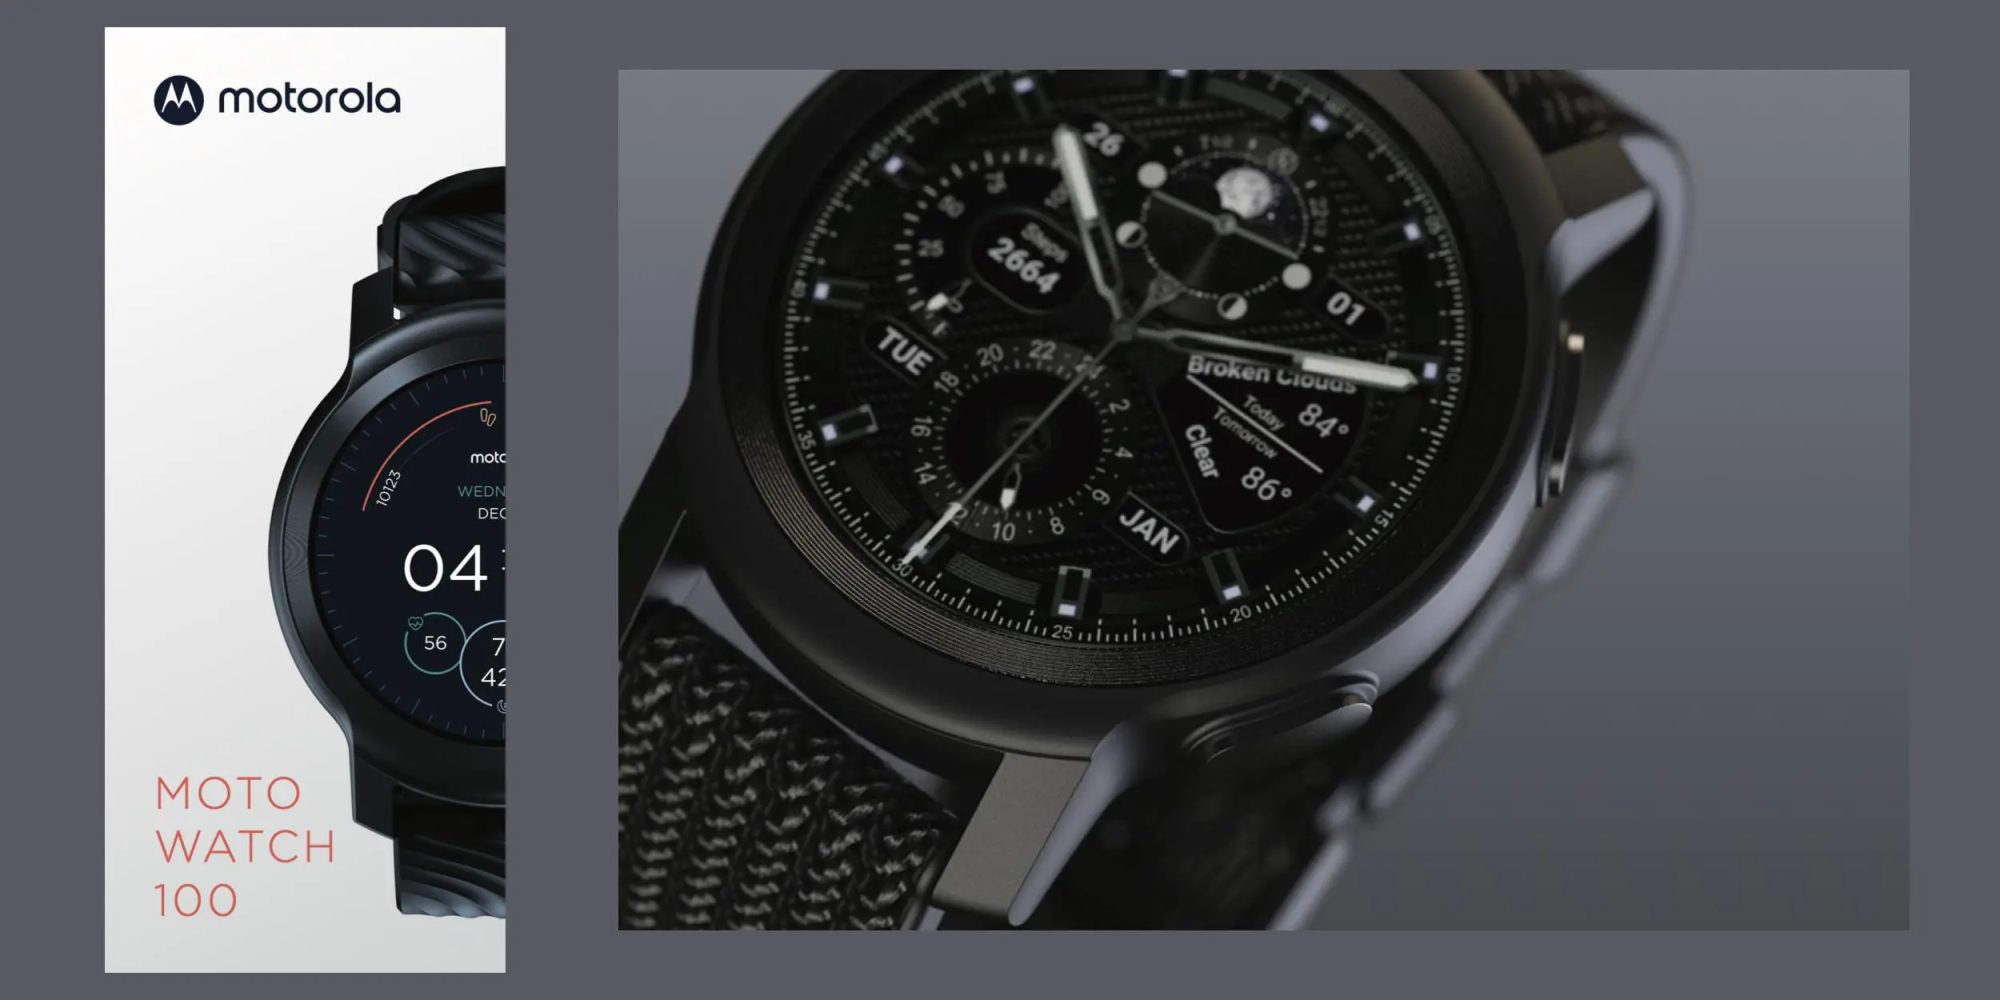 La Moto Watch 100 sera le nom de la prochaine smartwatch de la marque Motorola